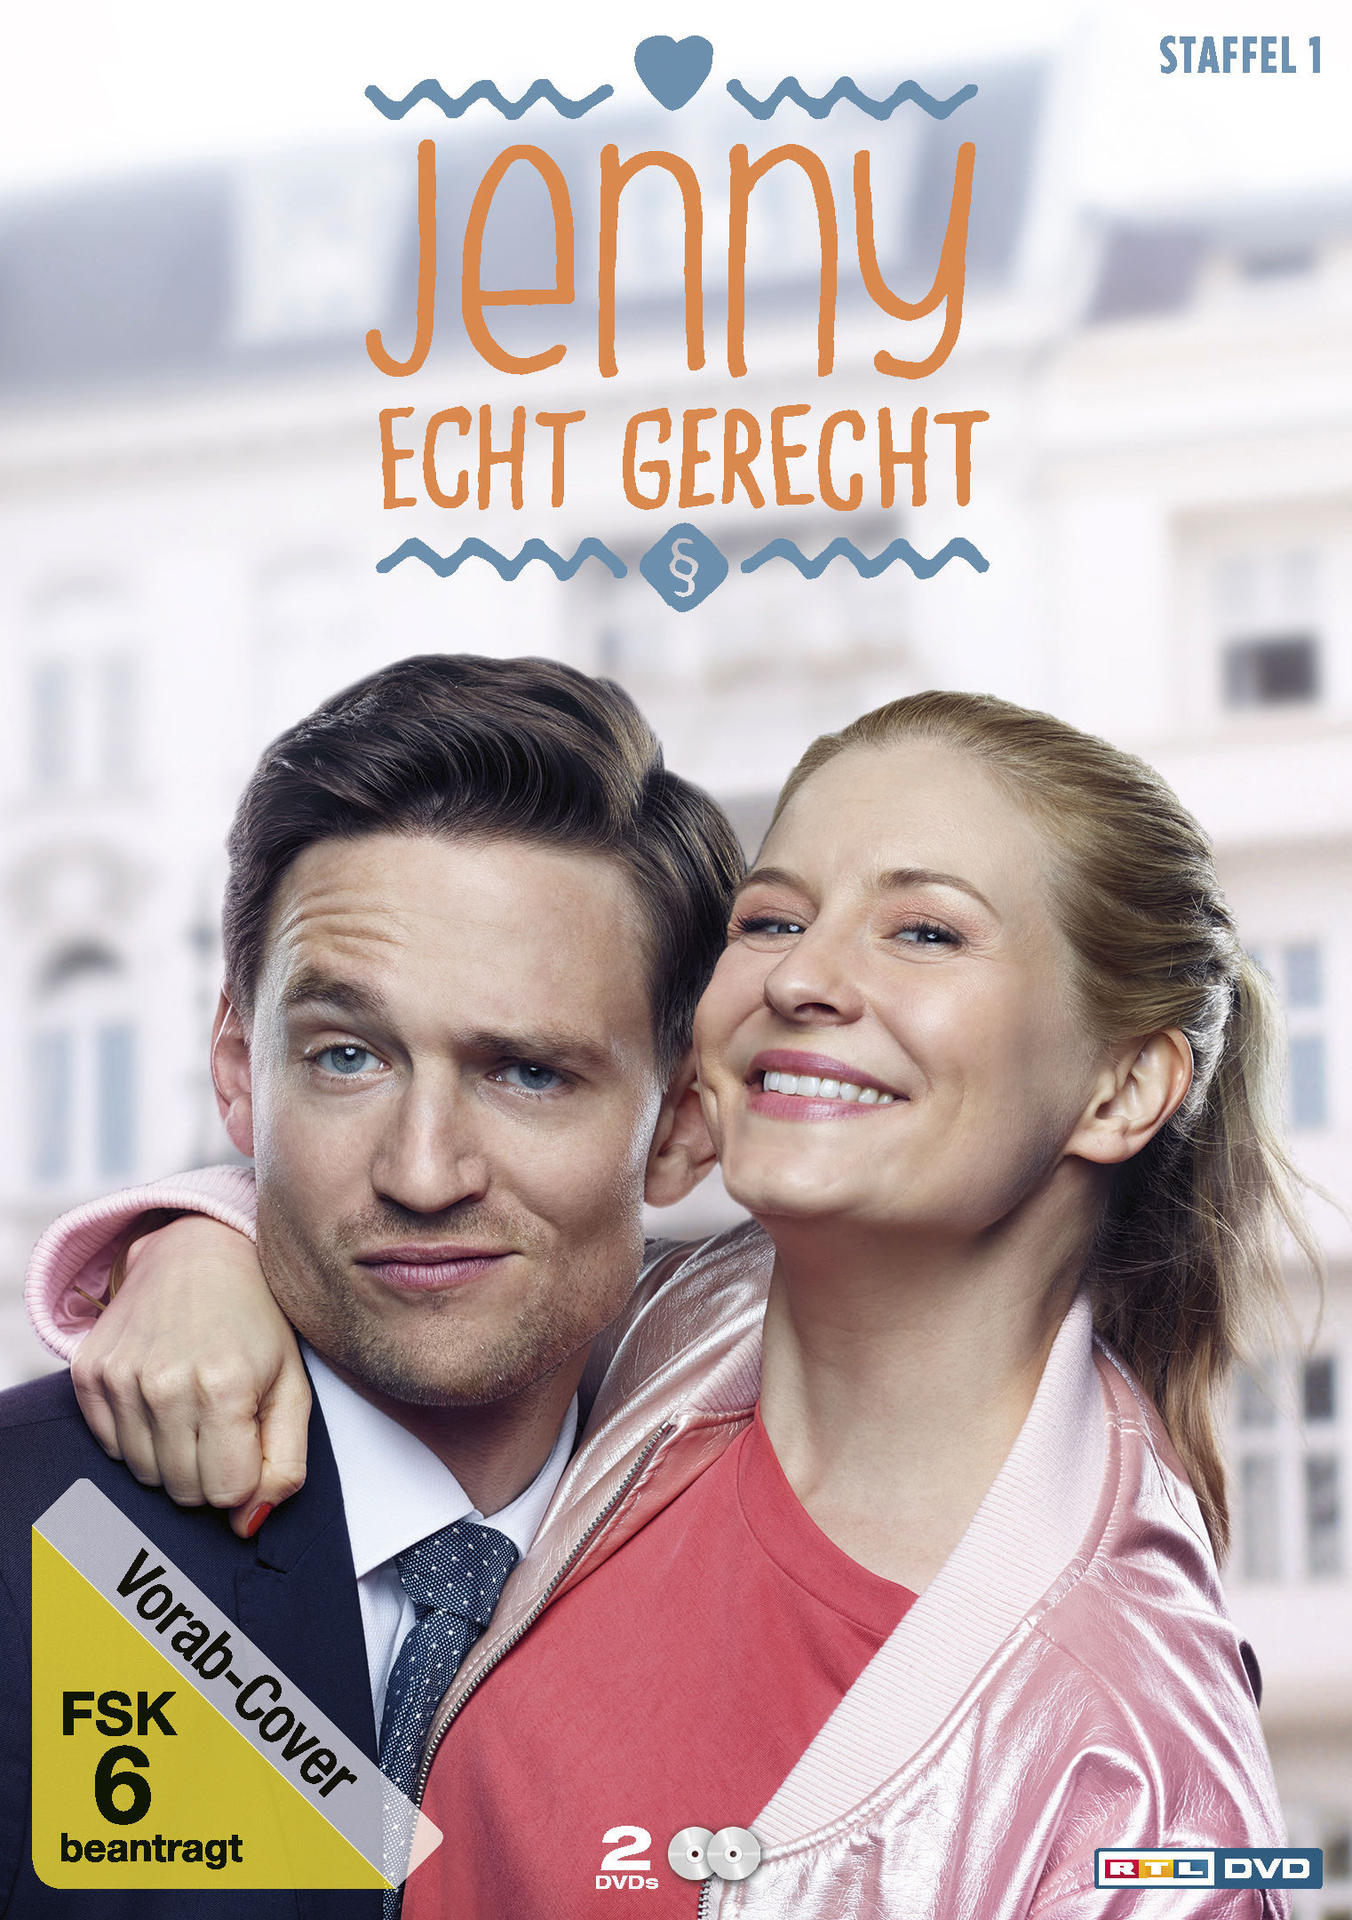 Gerecht DVD - - Jenny Echt Staffel 1